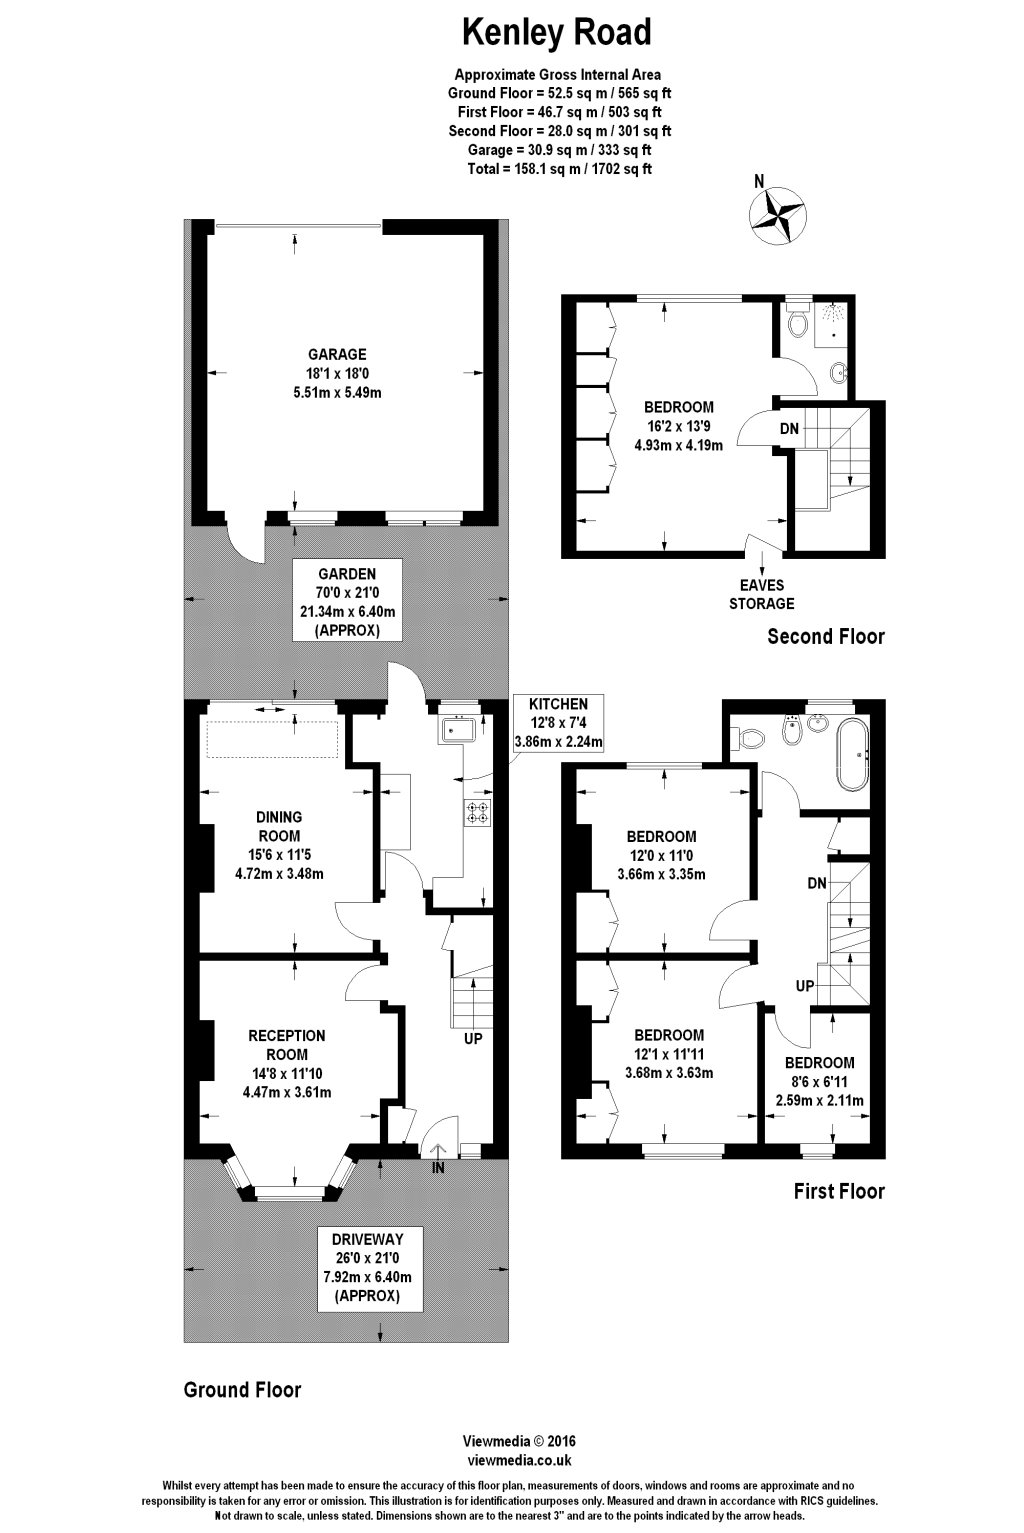 4 Bedrooms  to rent in Kenley Road, London SW19